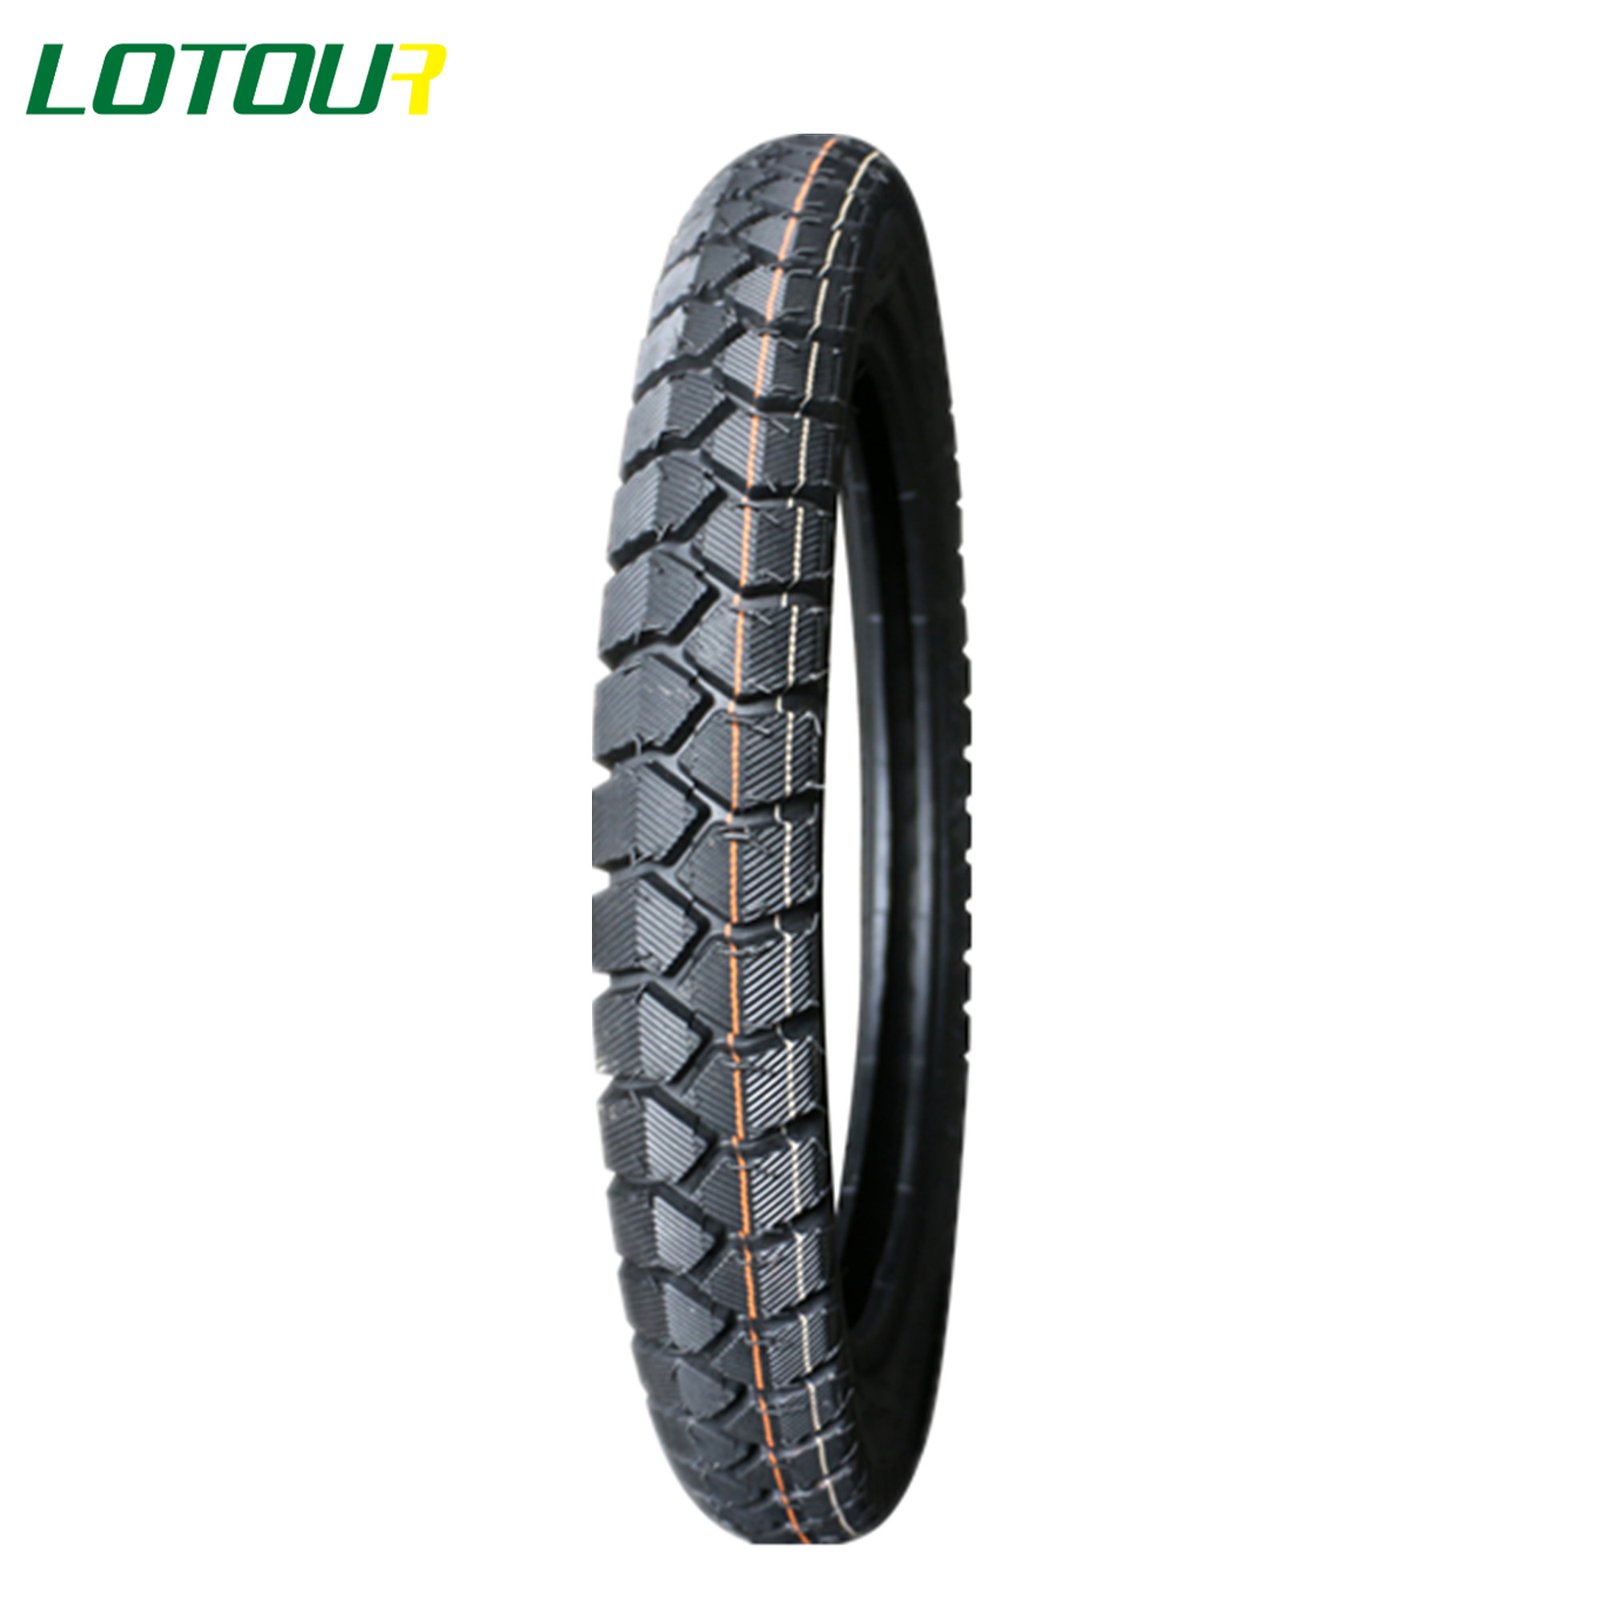 Lotour Tire M2101